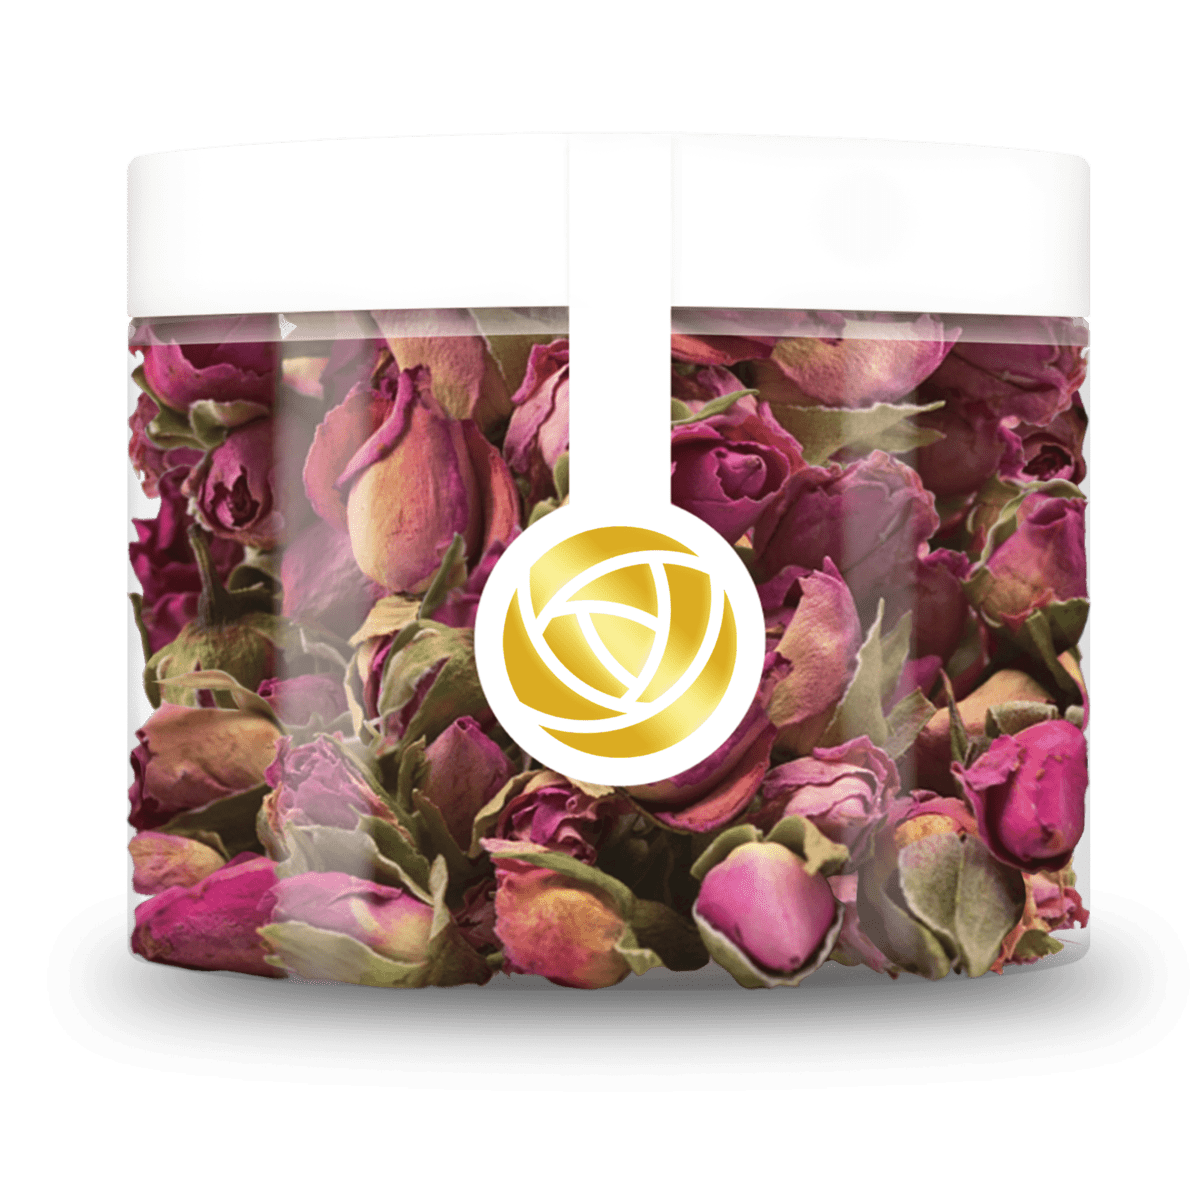 Verleihen Sie Ihren Torten und Gebäcken mit unseren essbaren Vintage Rose Blüten in Hell Rosa eine besondere Note. Unsere getrockneten Blüten setzen einzigartige Akzente bei der Dekoration Ihrer Torte und sind perfekt für eine schöne und köstliche Torte. Von ROSIE ROSE im Online-Shop kaufen